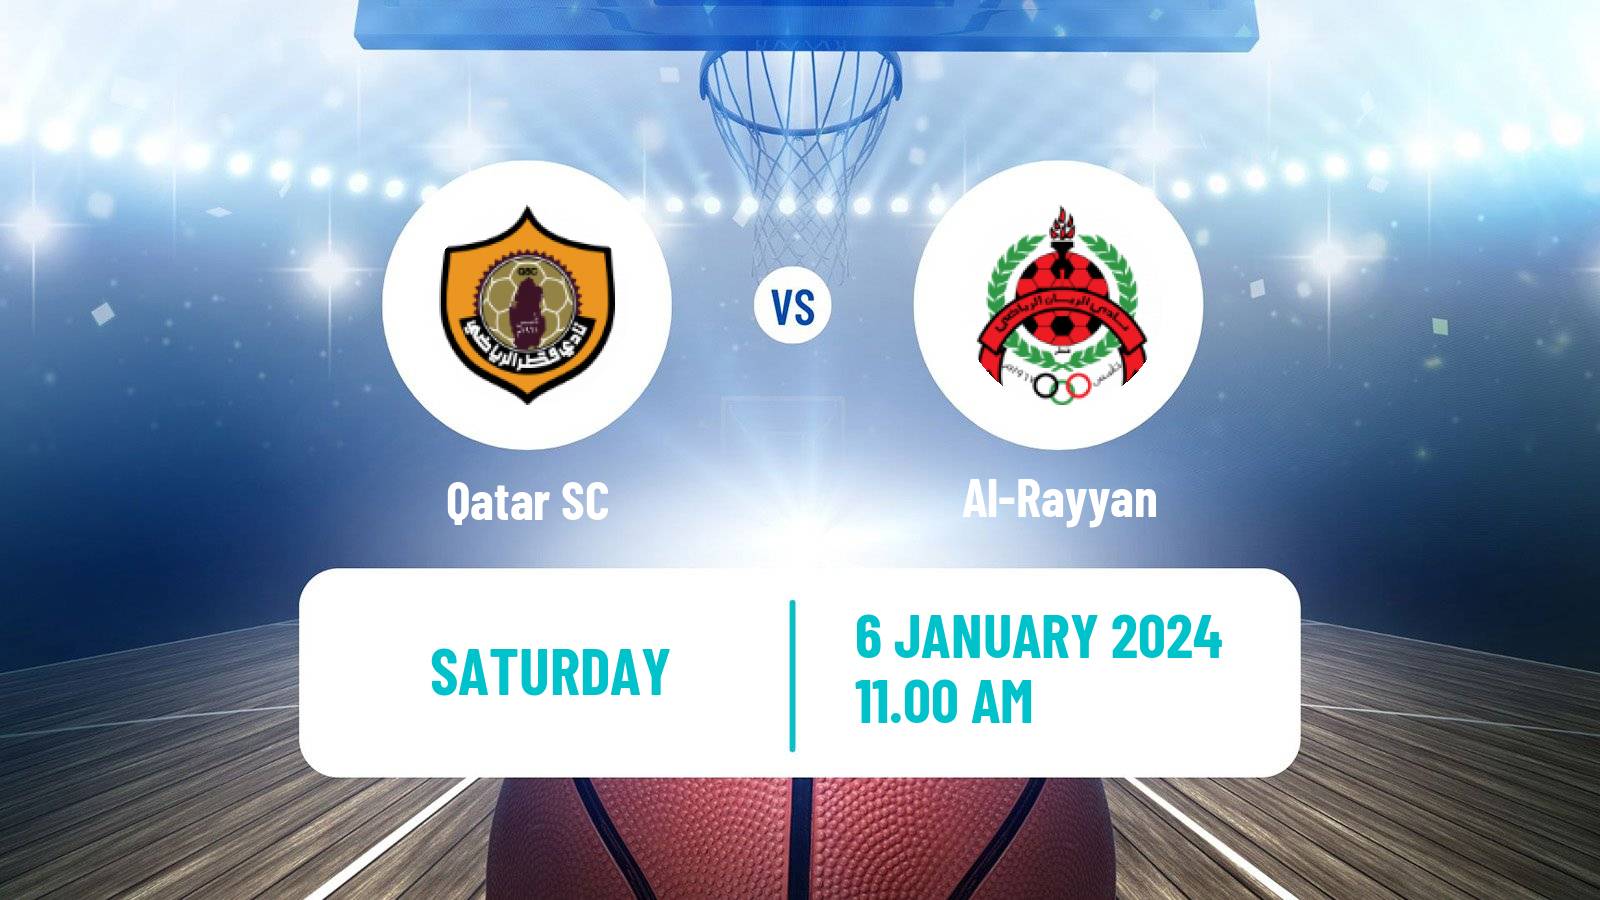 Basketball Qatar Basketball League Qatar SC - Al-Rayyan